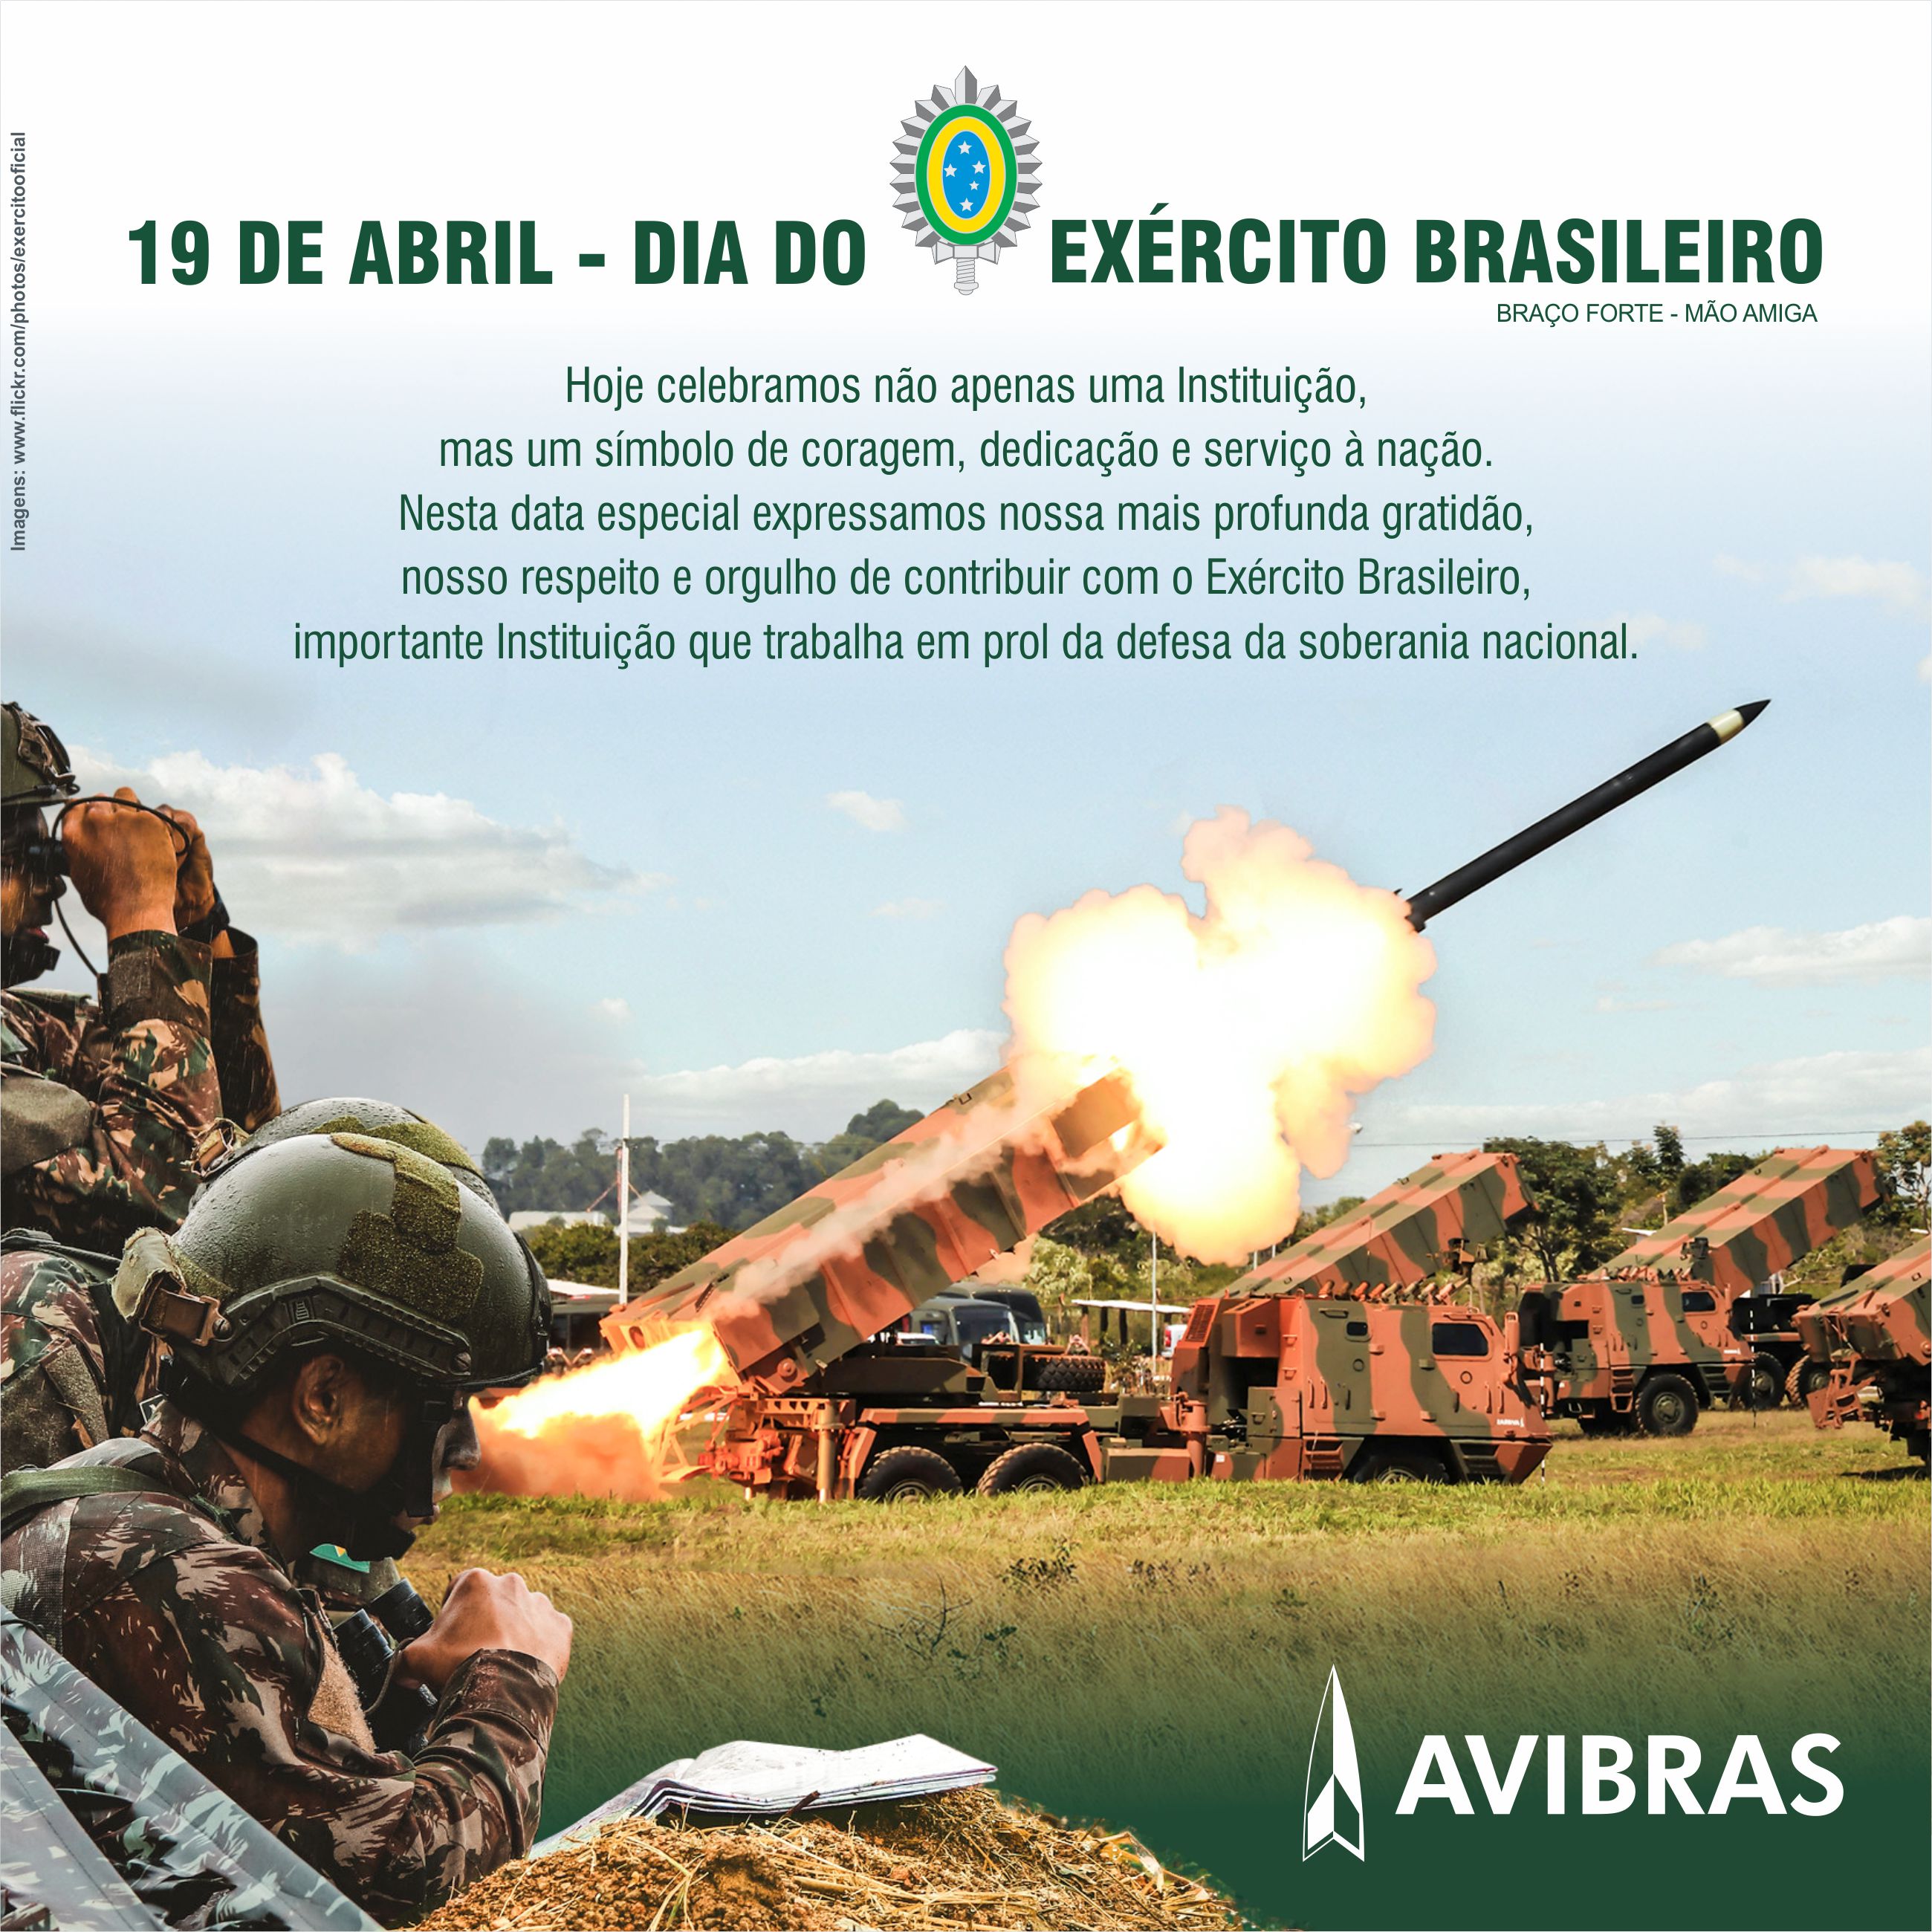 Nossa homenagem ao Dia do Exército Brasileiro